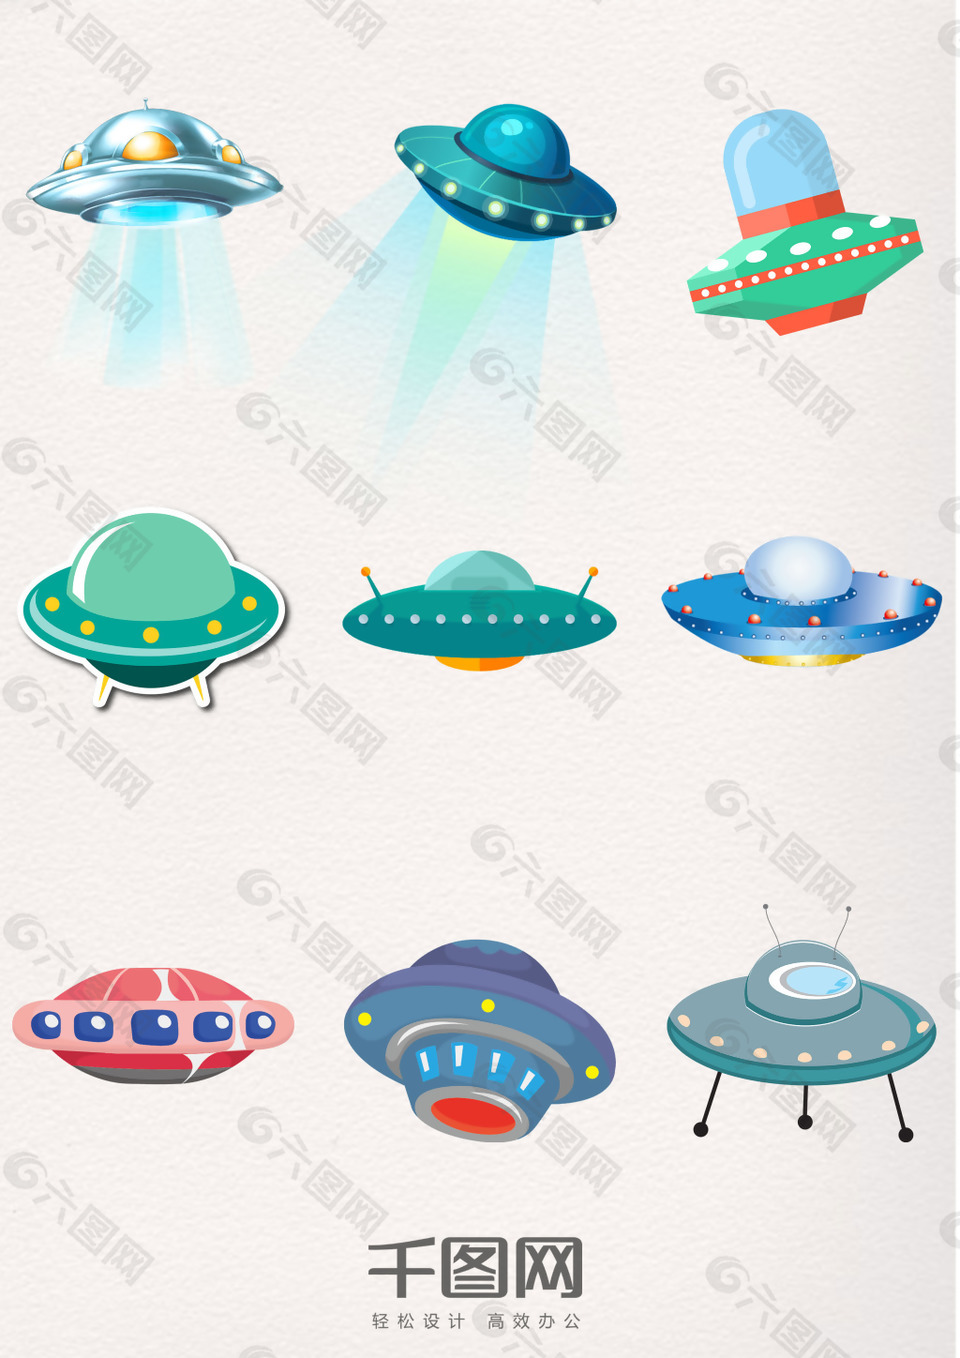 可爱卡通太空飞行器飞碟ufo设计元素素材免费下载 图片编号 六图网